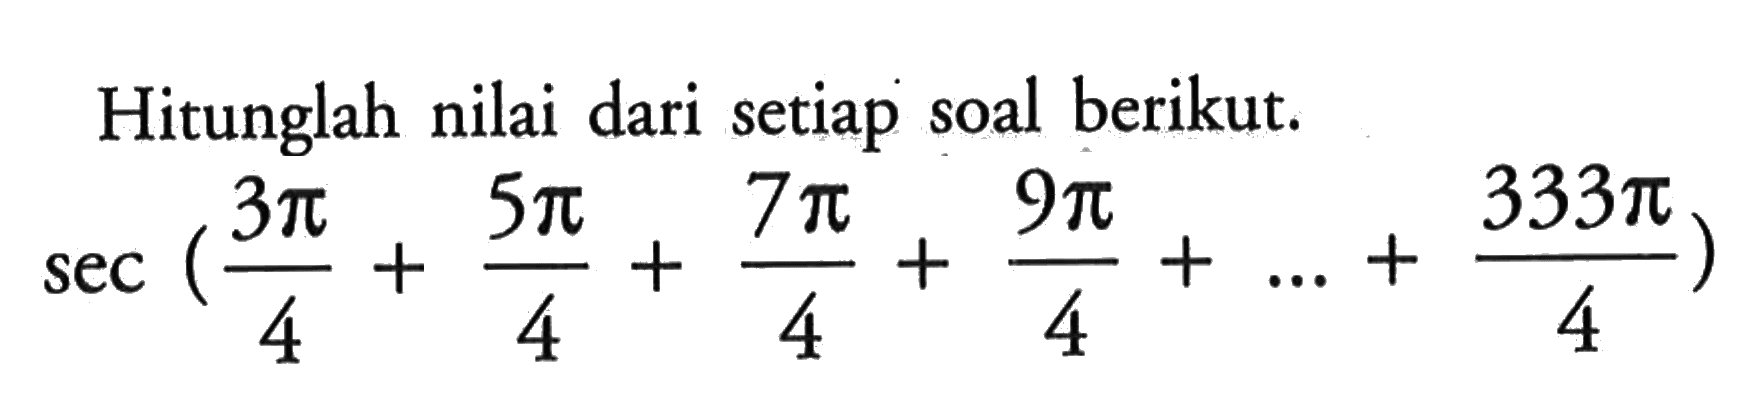 Hitunglah nilai dari setiap soal berikut.sec ((3 pi)/4+(5 pi)/4+(7 pi)/4+(9 pi)/4+...+(333 pi)/4)